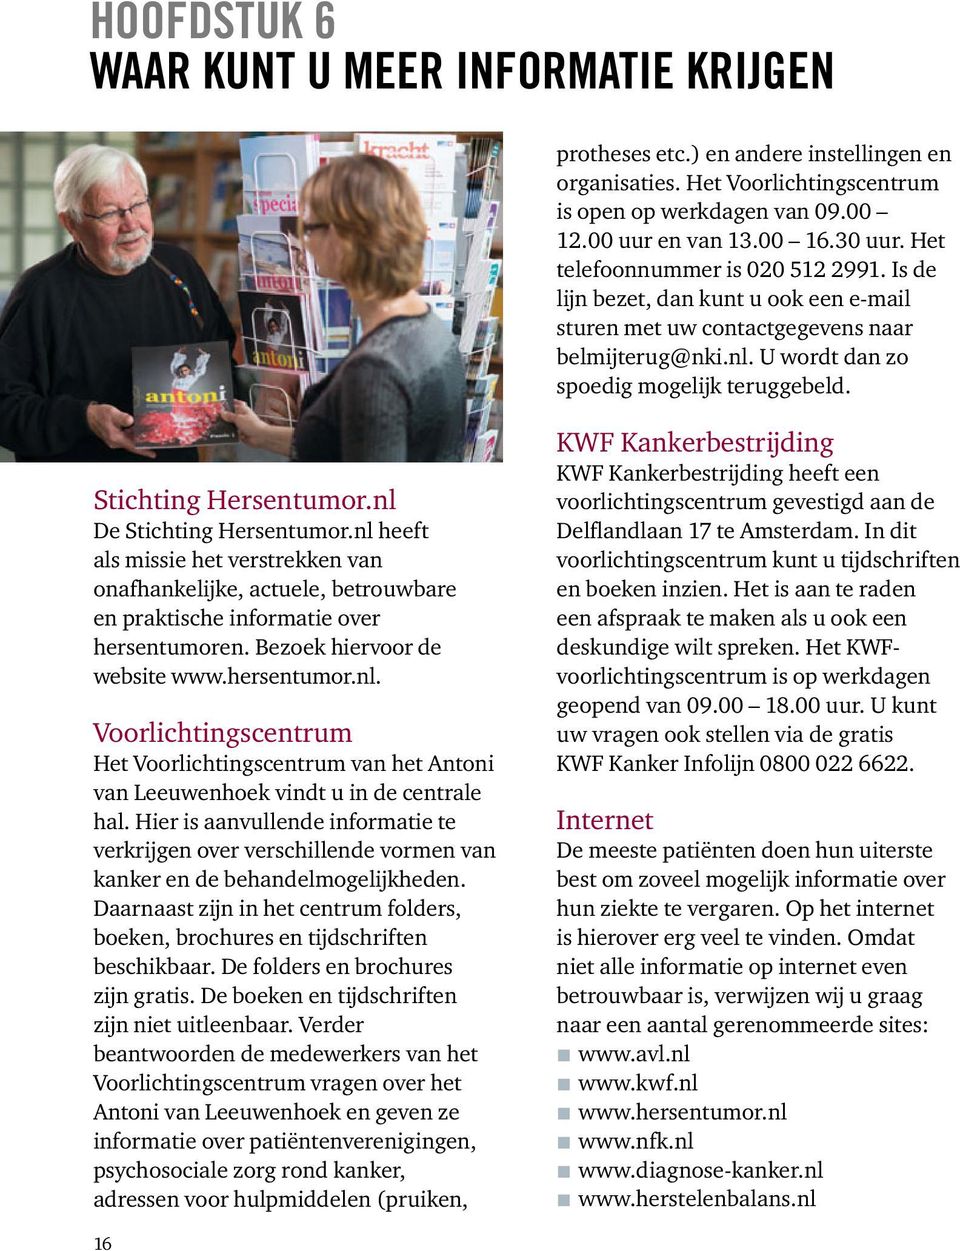 Stichting Hersentumor.nl De Stichting Hersentumor.nl heeft als missie het verstrekken van onafhankelijke, actuele, betrouwbare en praktische infor matie over hersentumoren.